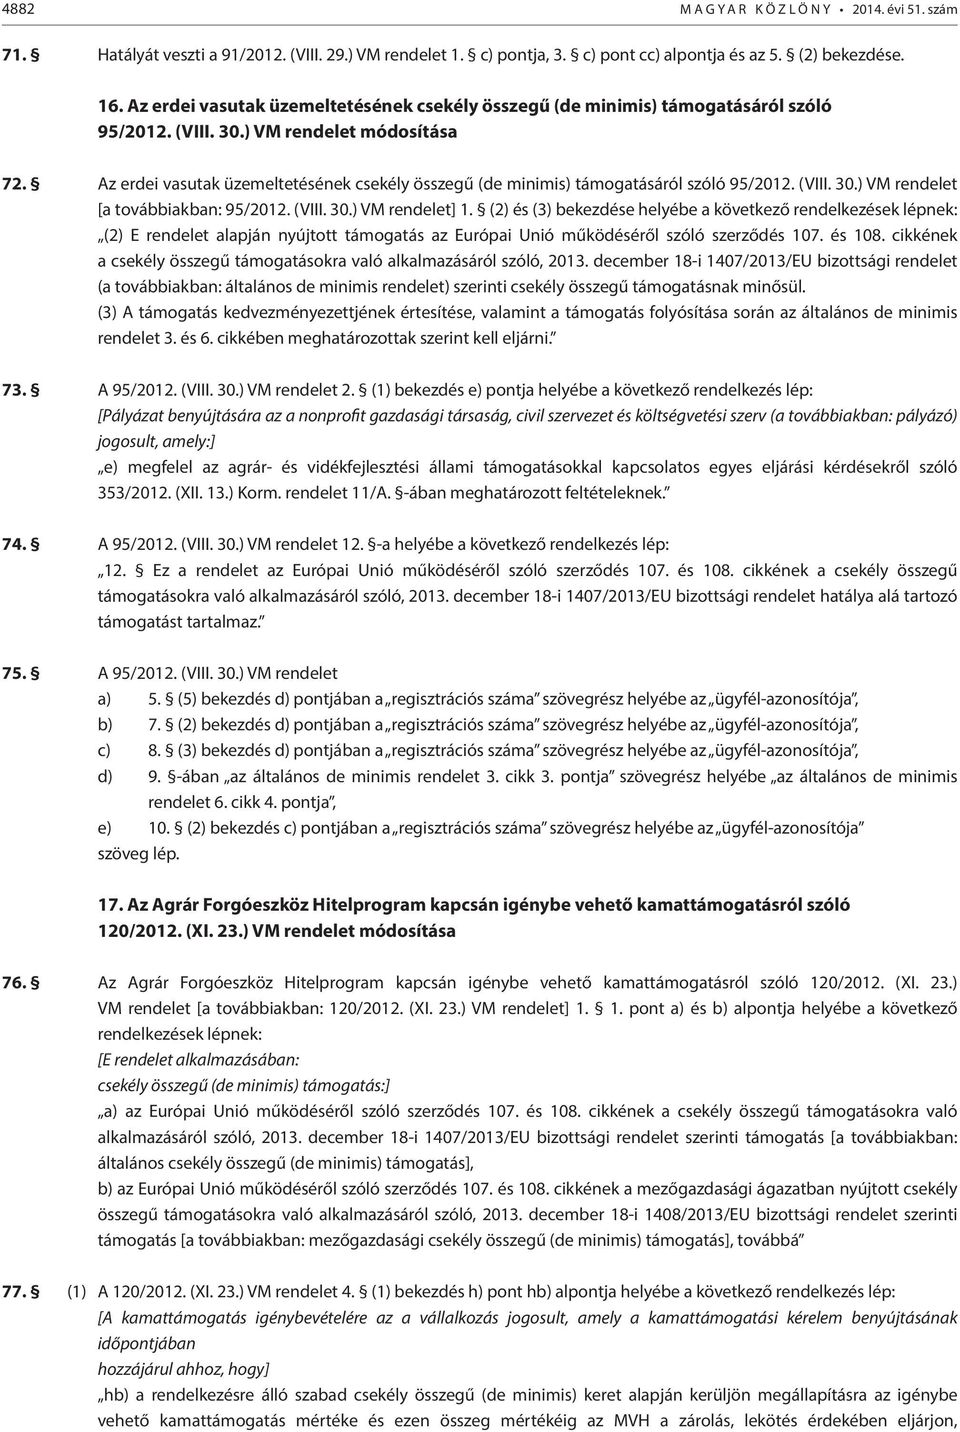 Az erdei vasutak üzemeltetésének csekély összegű (de minimis) támogatásáról szóló 95/2012. (VIII. 30.) VM rendelet [a továbbiakban: 95/2012. (VIII. 30.) VM rendelet] 1.